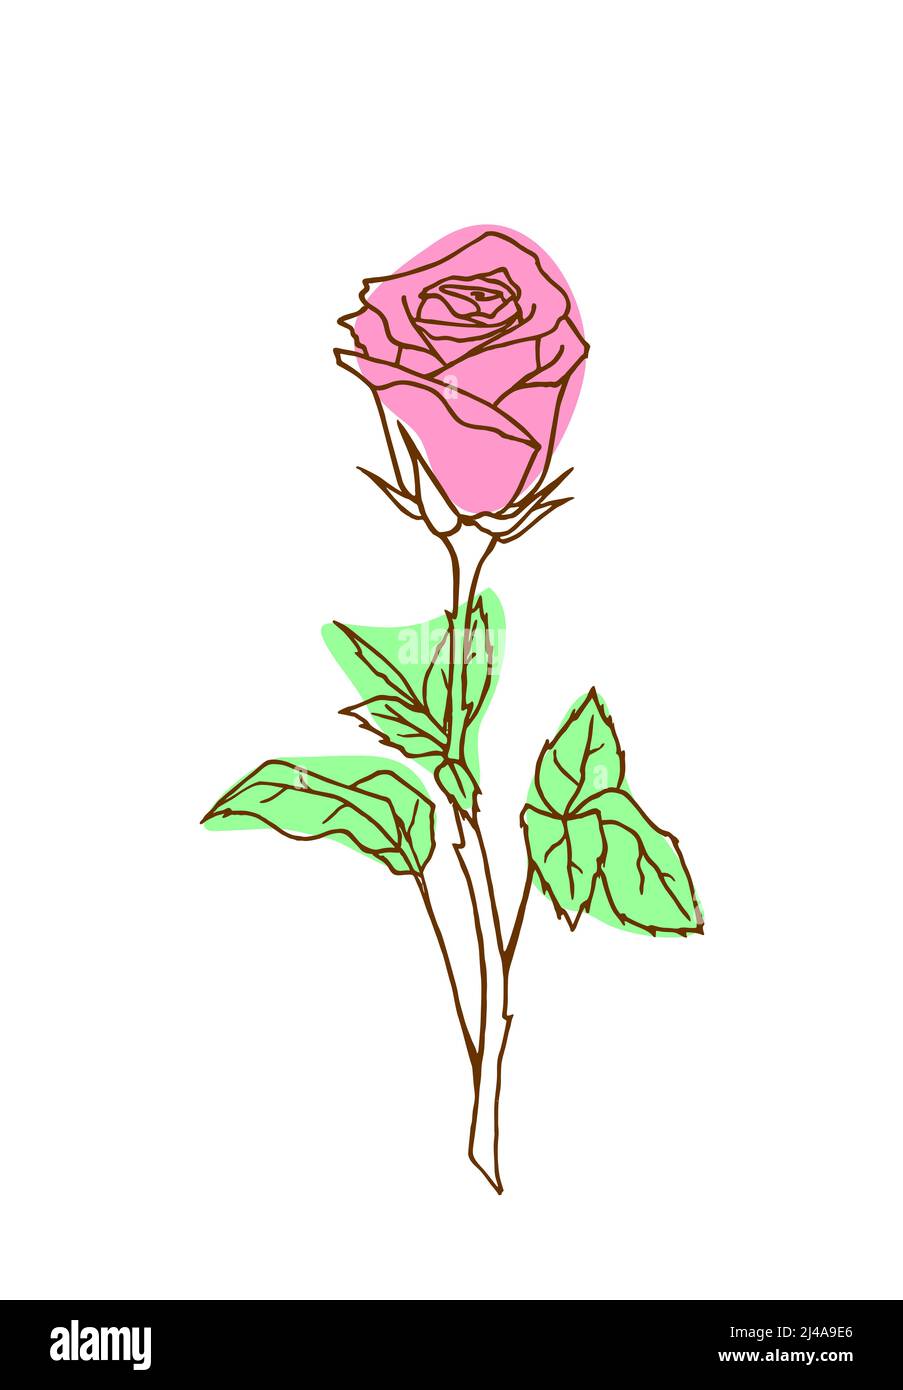 Rosa Zweig pastellfarbene grafische Zeichnung isoliert auf weißem Hintergrund Stockfoto